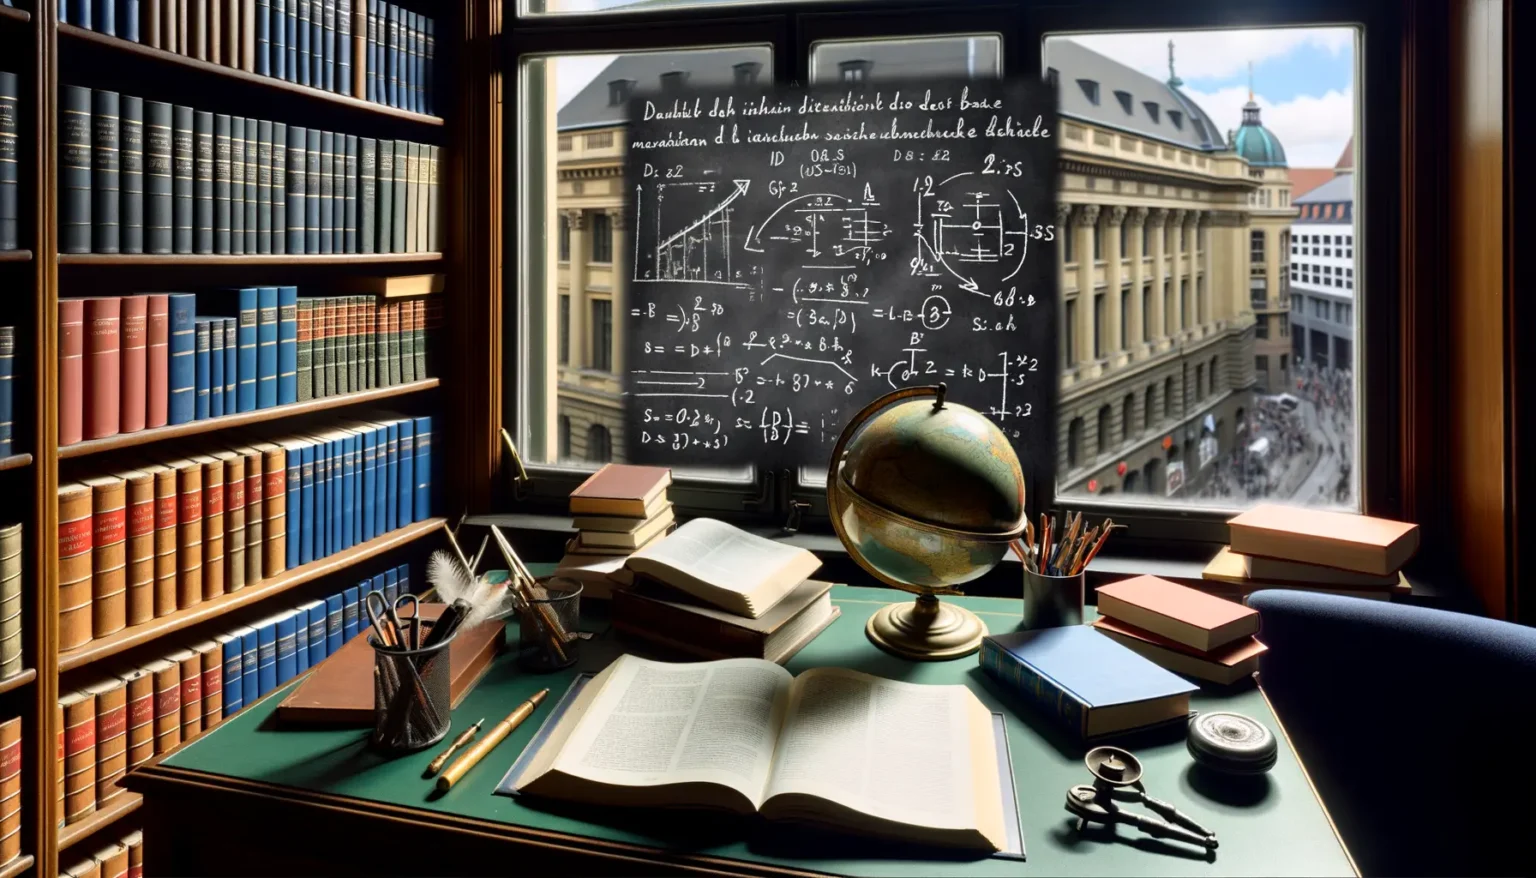 Klassisches Arbeitszimmer mit einem Schreibtisch, auf dem Bücher, ein geöffneter Globus, Schreibutensilien und eine Tafel mit mathematischen Formeln im Hintergrund liegen. Durch das Fenster ist ein Blick auf die belebte Straße mit historischen Gebäuden sichtbar.